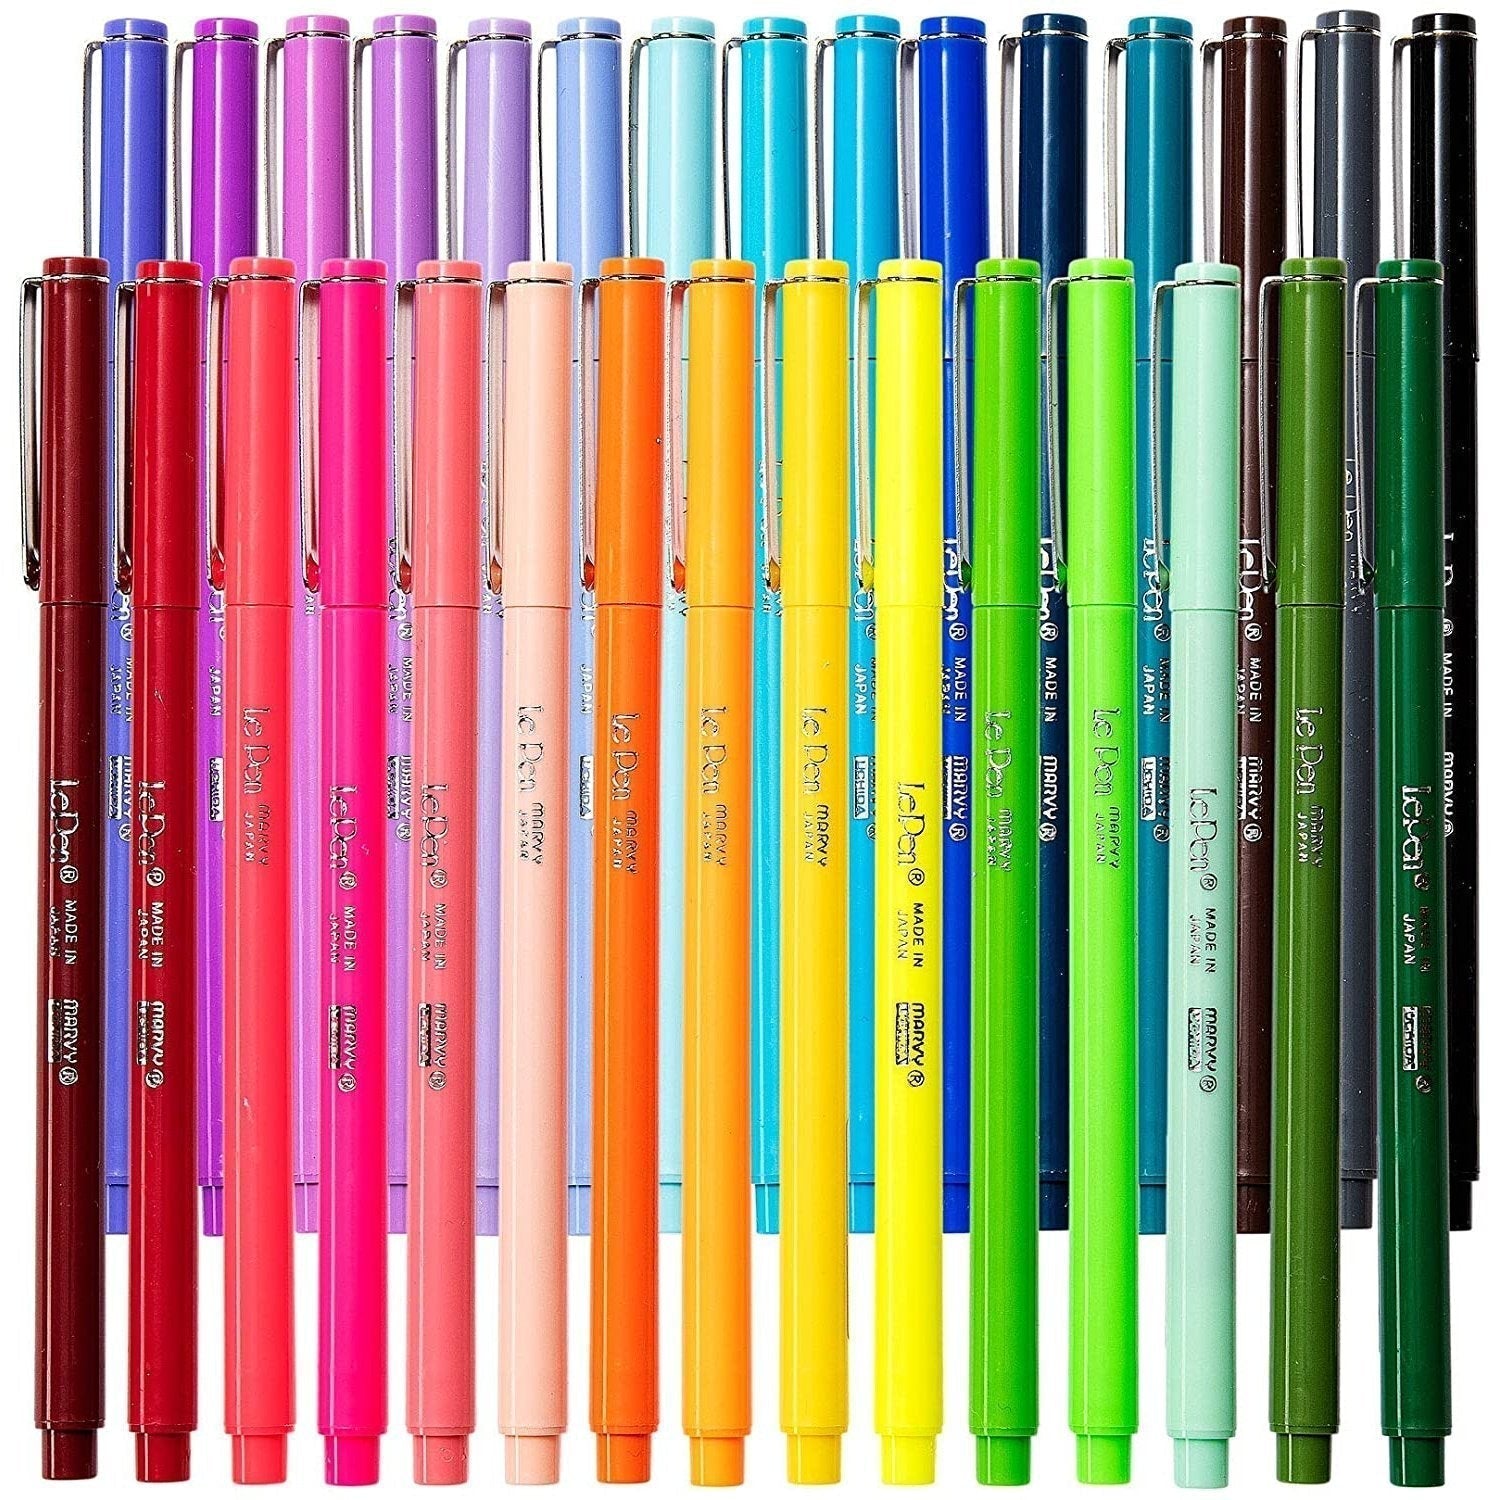 Le Pens Multicolor Set - 0.3mm Fine Point Pens - Smudge Proof Ink - 30